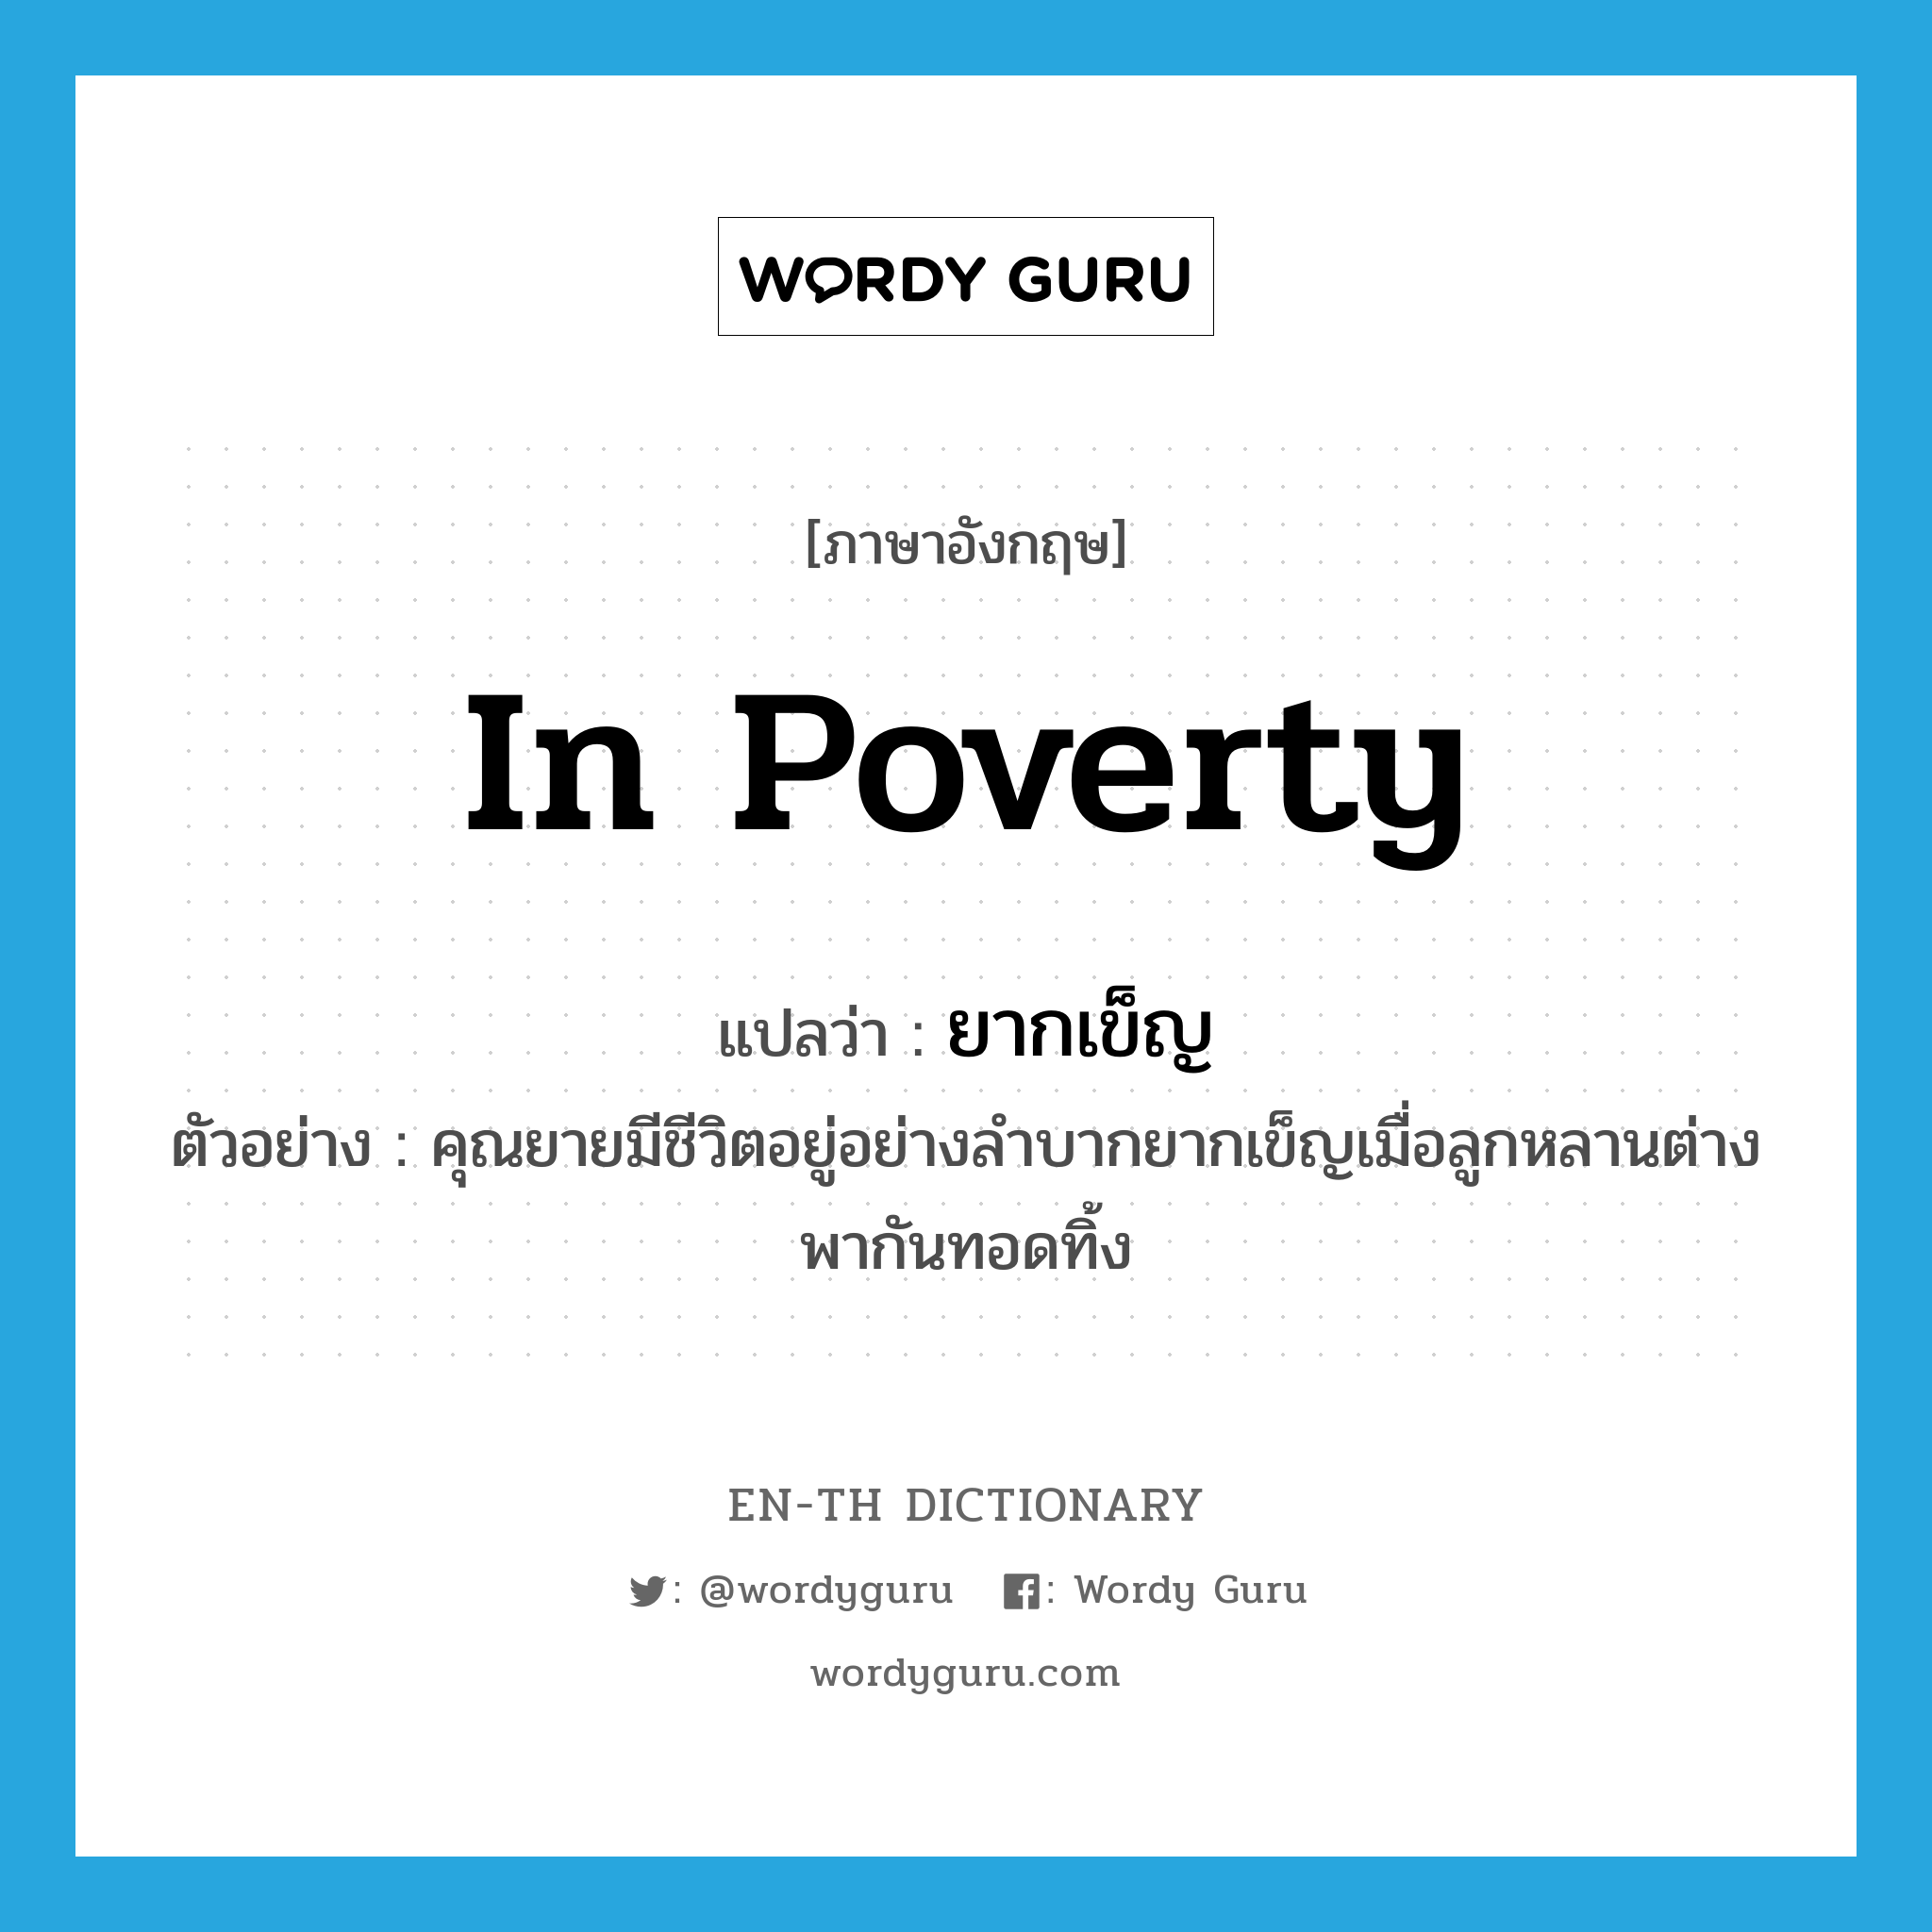 ยากเข็ญ ภาษาอังกฤษ?, คำศัพท์ภาษาอังกฤษ ยากเข็ญ แปลว่า in poverty ประเภท ADV ตัวอย่าง คุณยายมีชีวิตอยู่อย่างลำบากยากเข็ญเมื่อลูกหลานต่างพากันทอดทิ้ง หมวด ADV